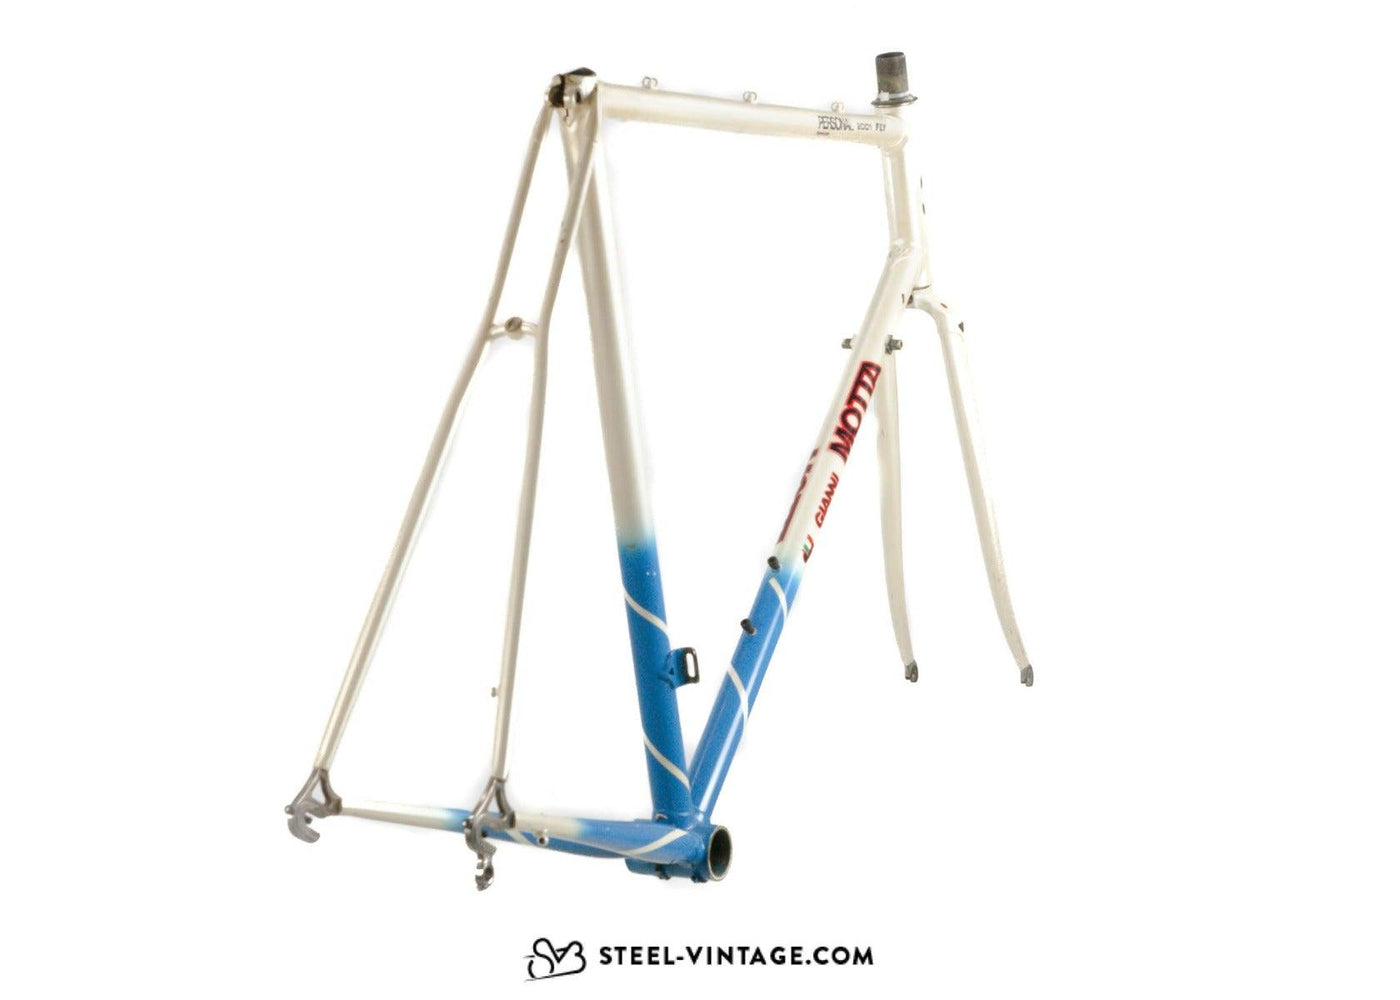 Gianni Motta Frameset - Steel Vintage Bikes